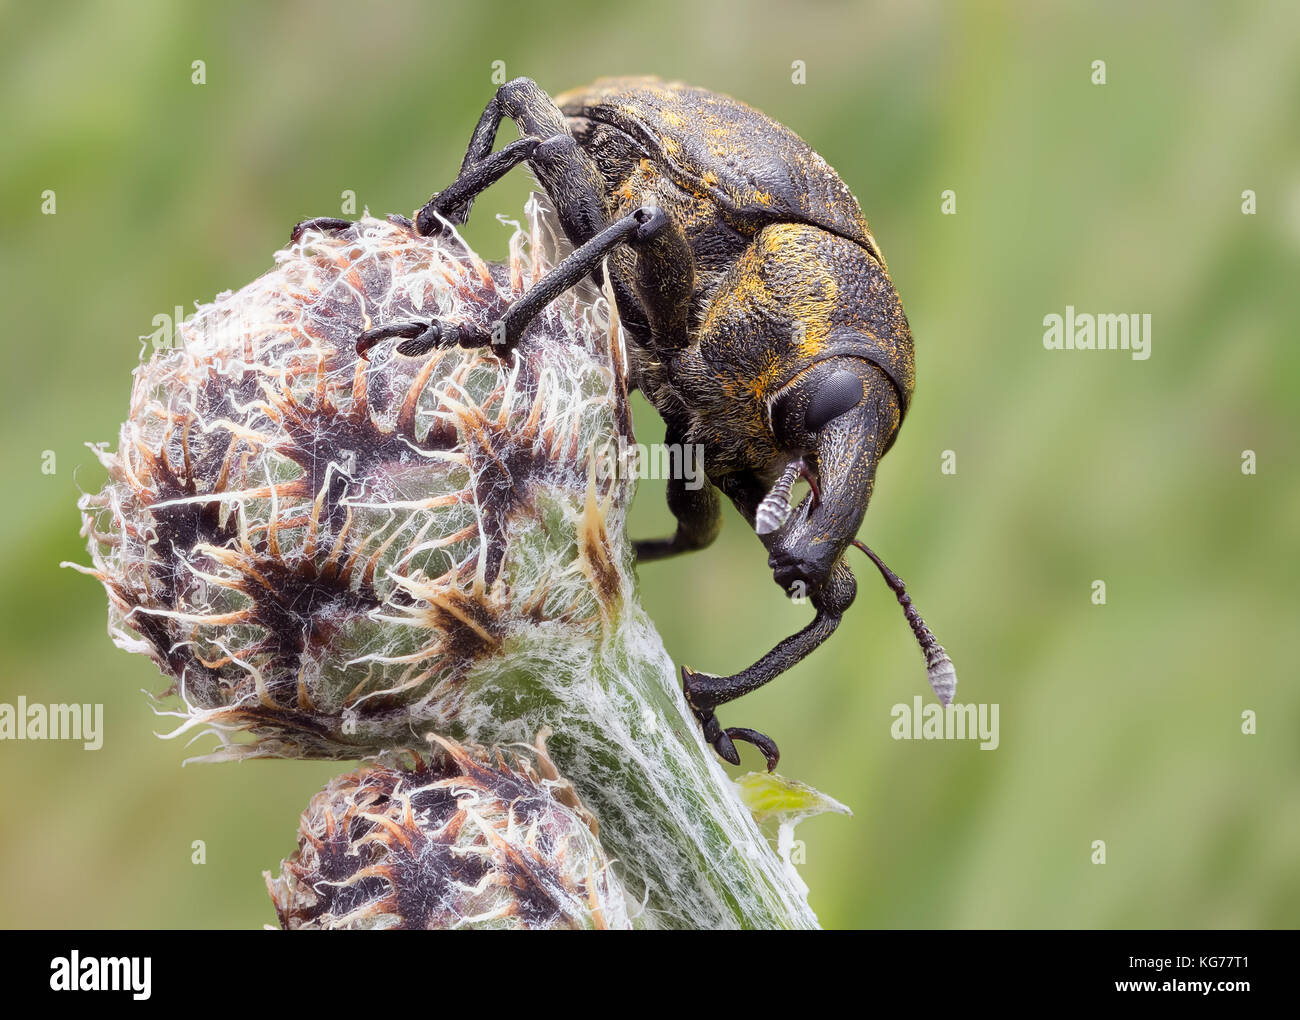 Rüsselkäfer / Bug Beetle Weevil hocico un ejemplar de Involvulus caeruleus, diente de nariz de negro de la Vina Weevil Foto de stock